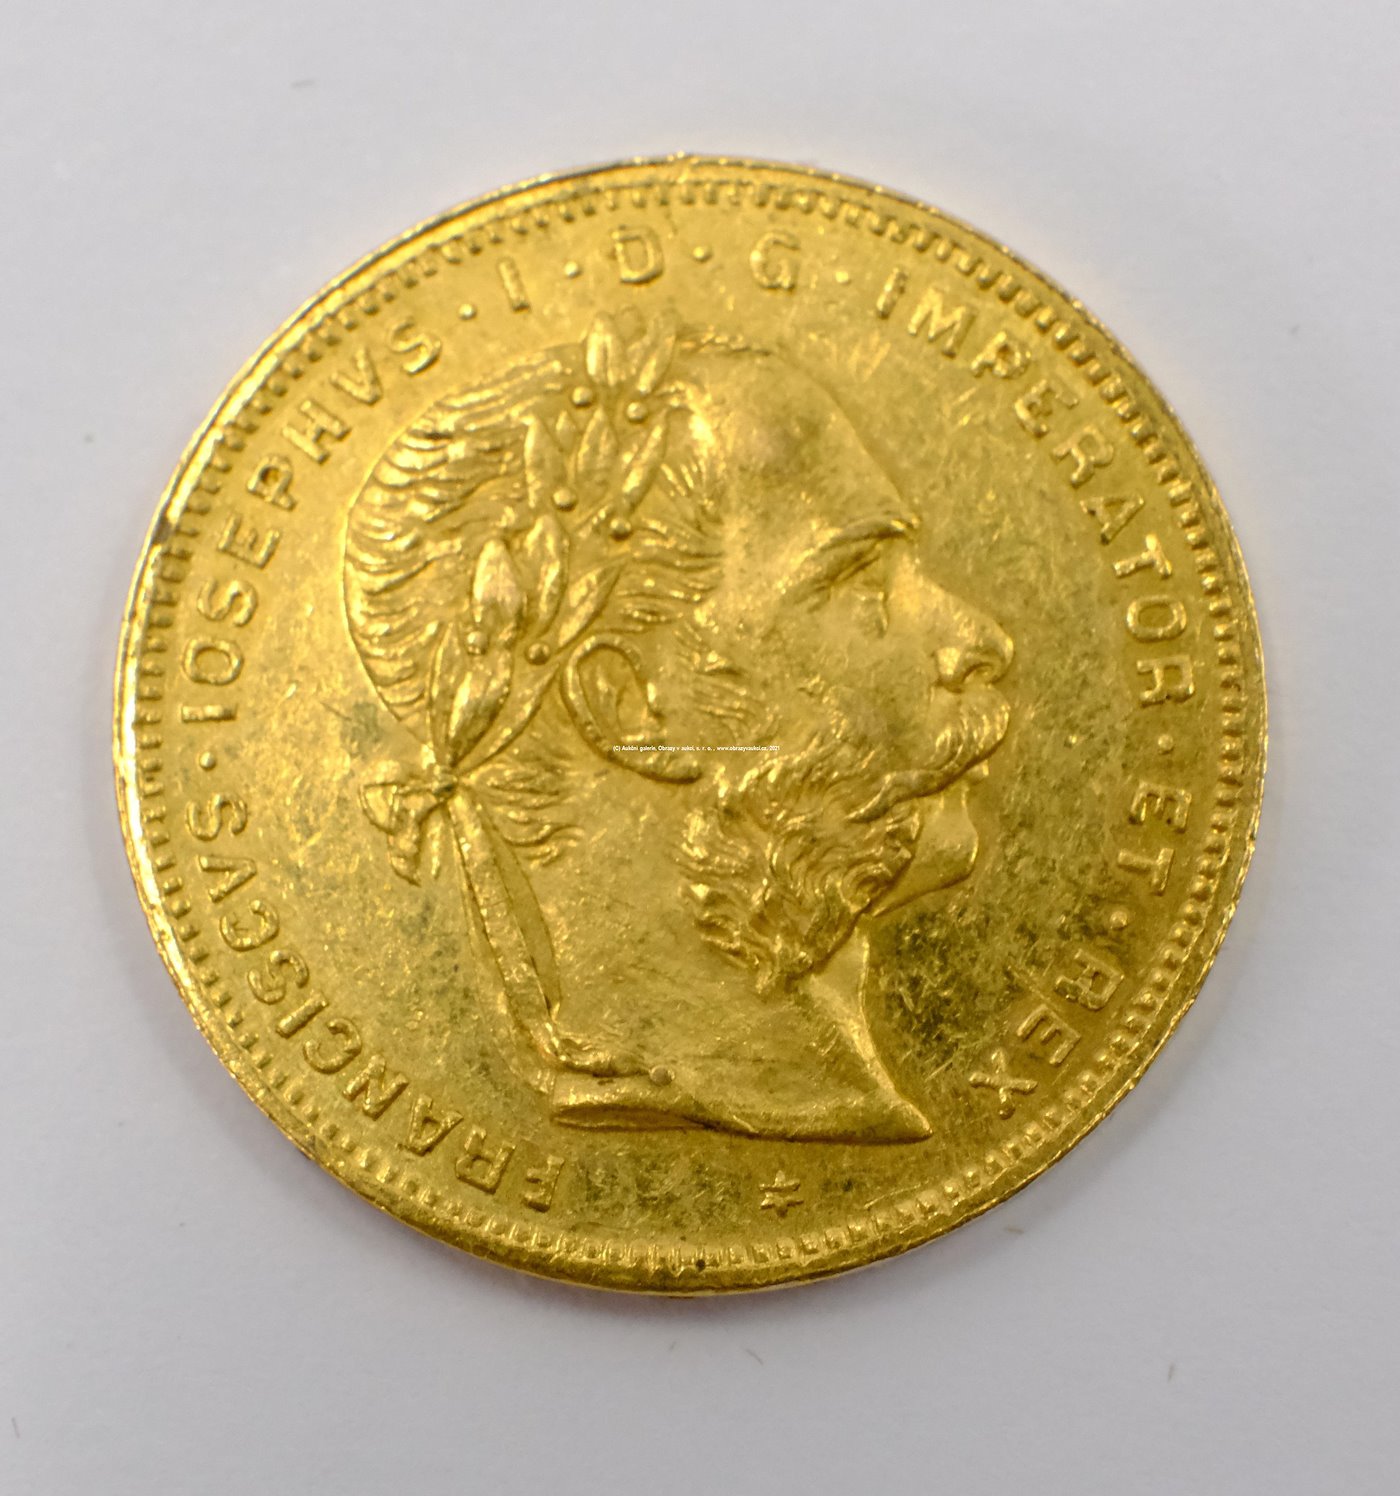 .. - Rakousko Uhersko zlatý 8 zlatník/20frank 1881 rakouský.  Zlato 900/1000, hrubá hmotnost mince 6,452g